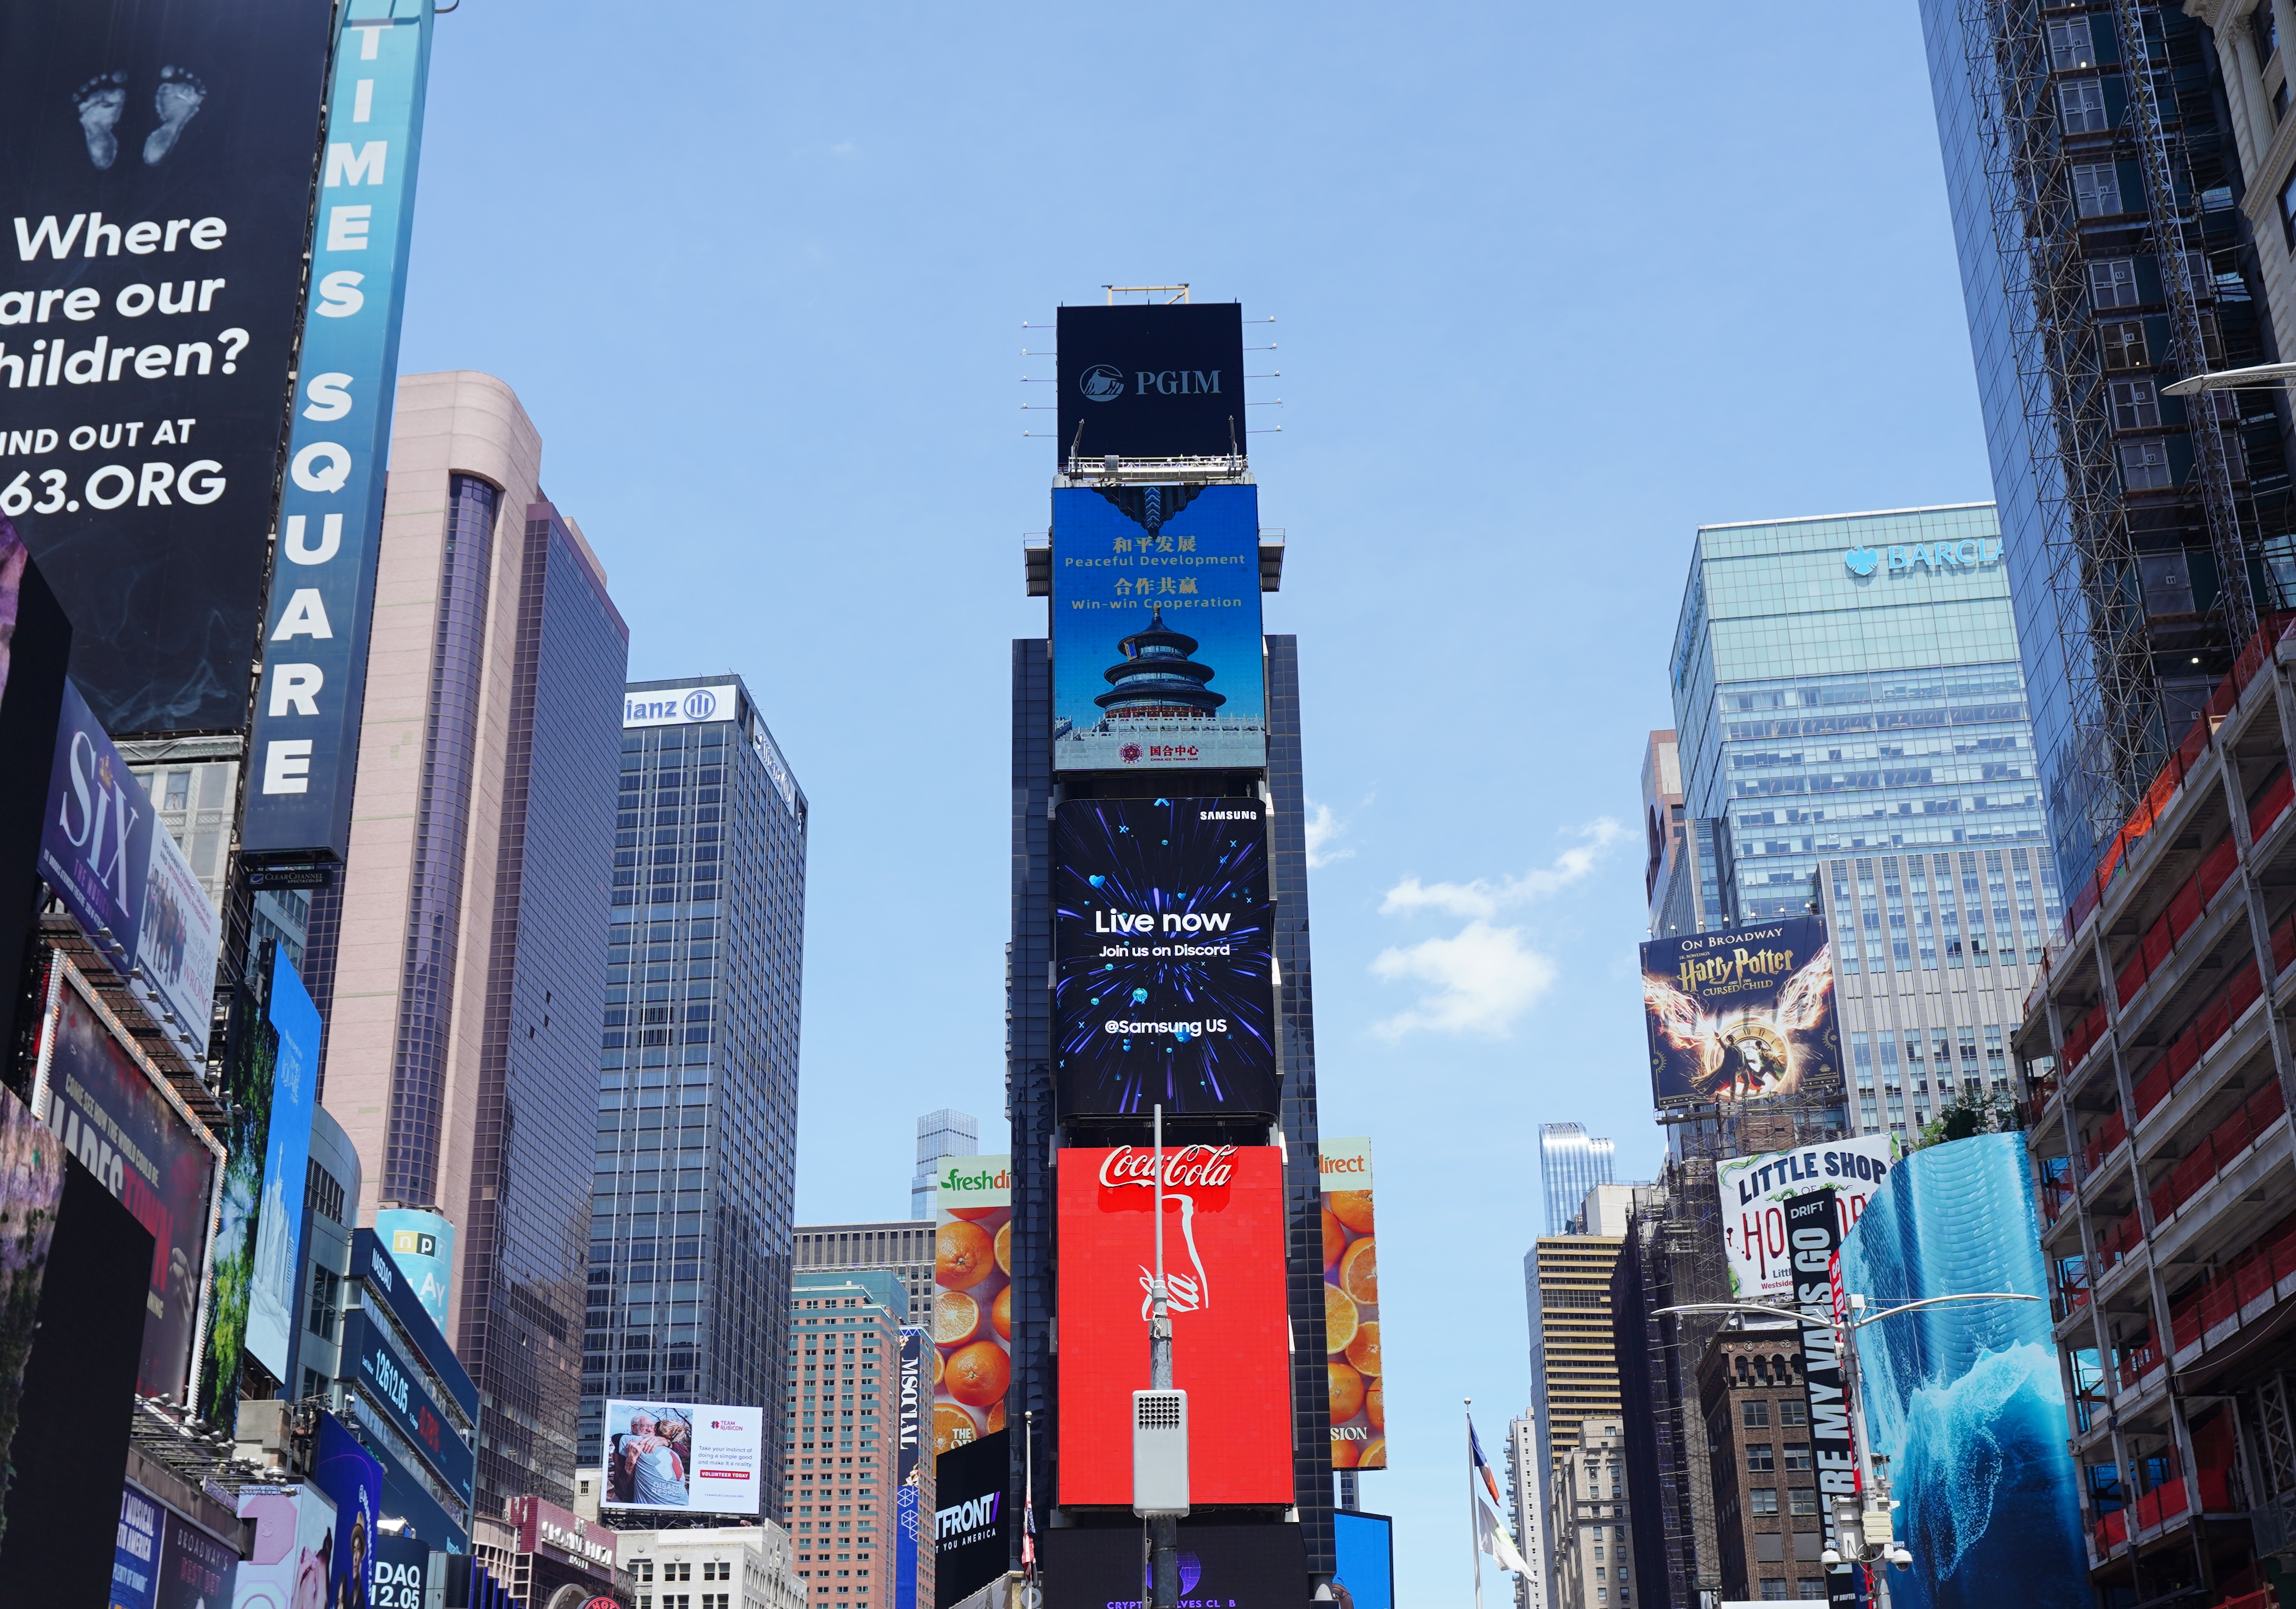 国际合作中心发布《感知世界的温度》宣传片亮相纽约时报广场大屏